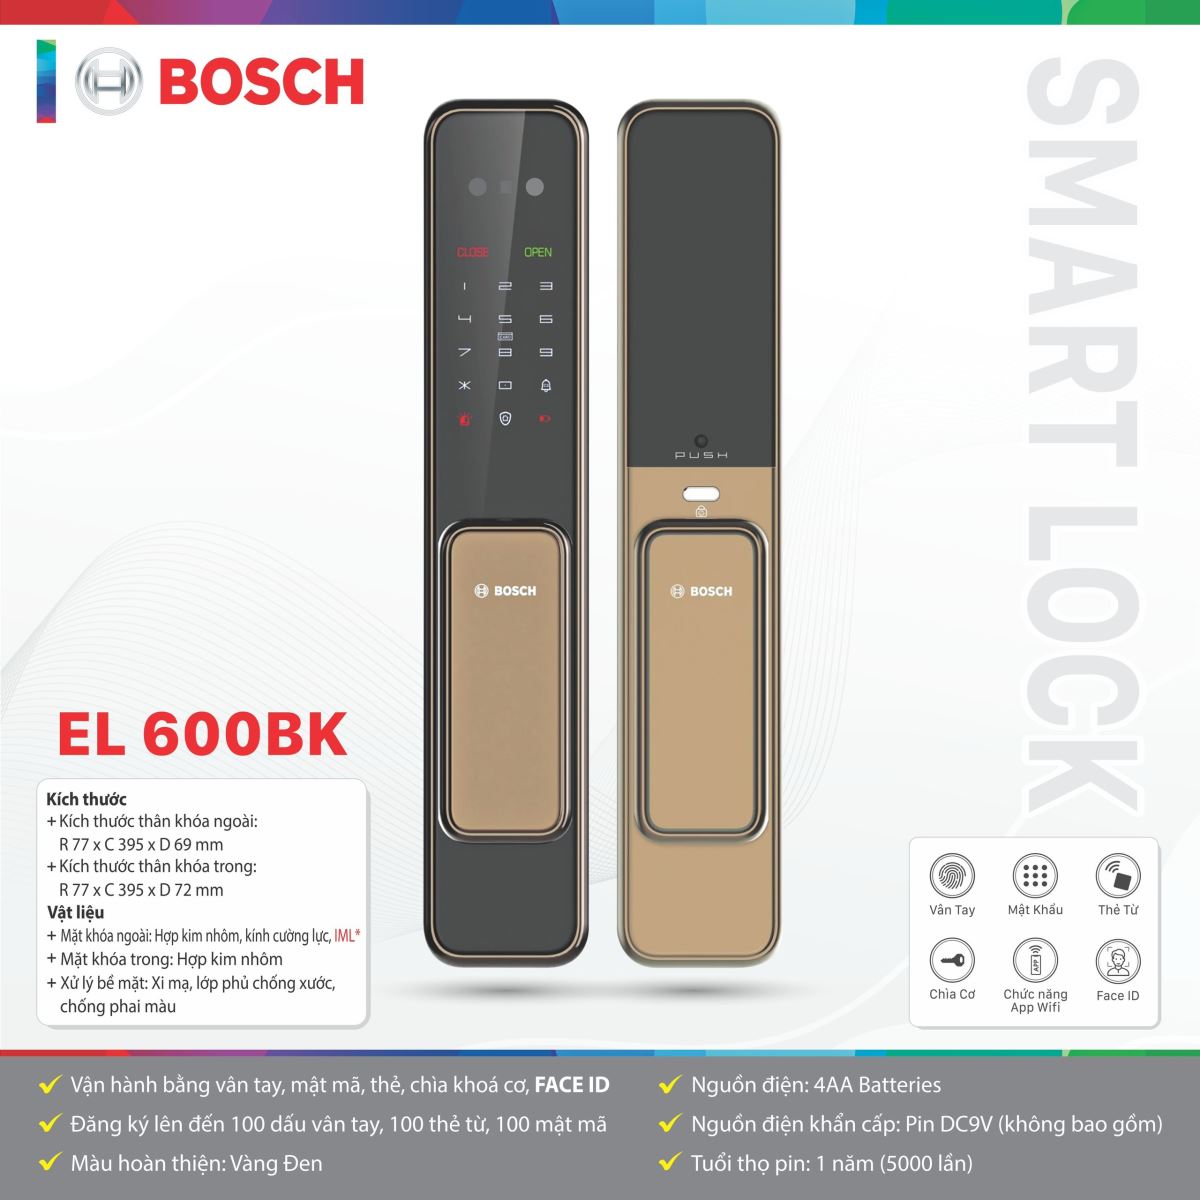 Khóa cửa Bosch EL 600BK